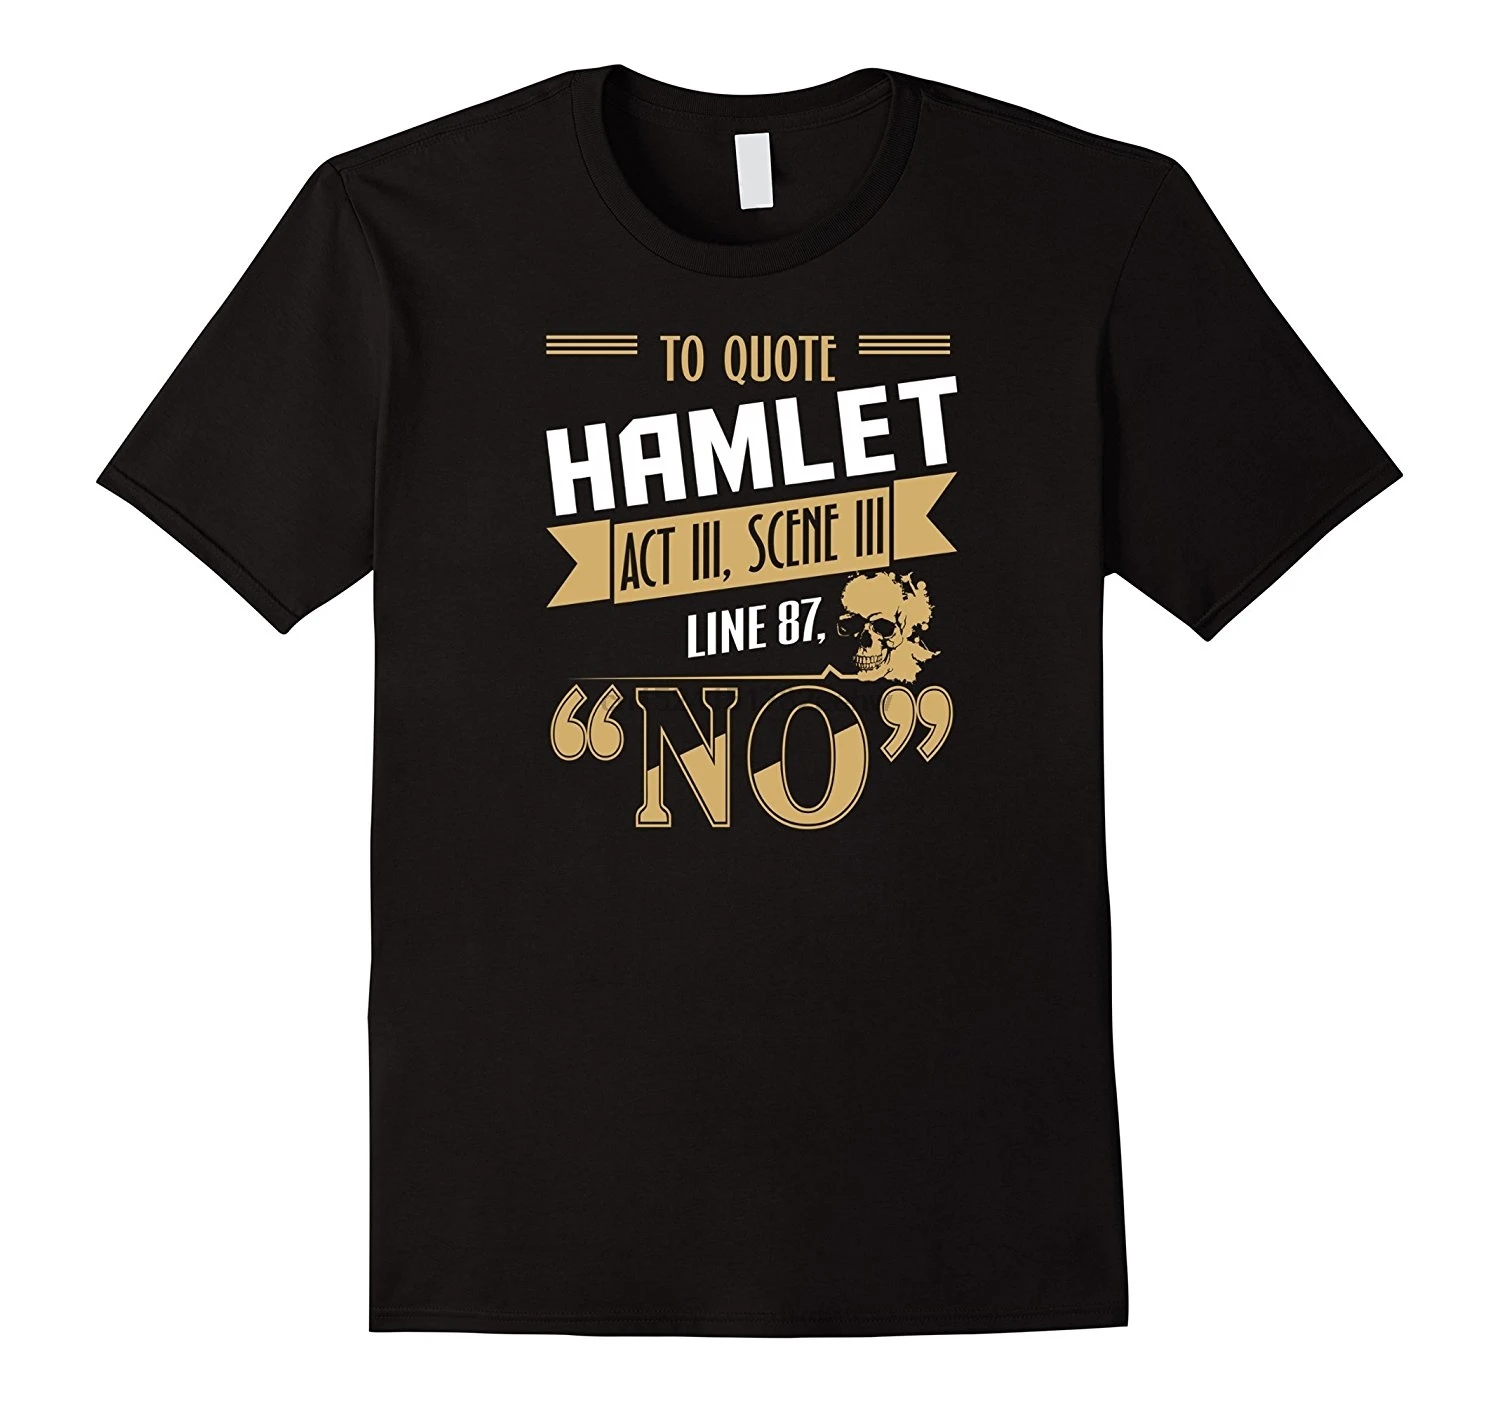 Фото Для цитаты Гамлета нет футболки саркастическая Цитата череп книга арт Т | Мужская